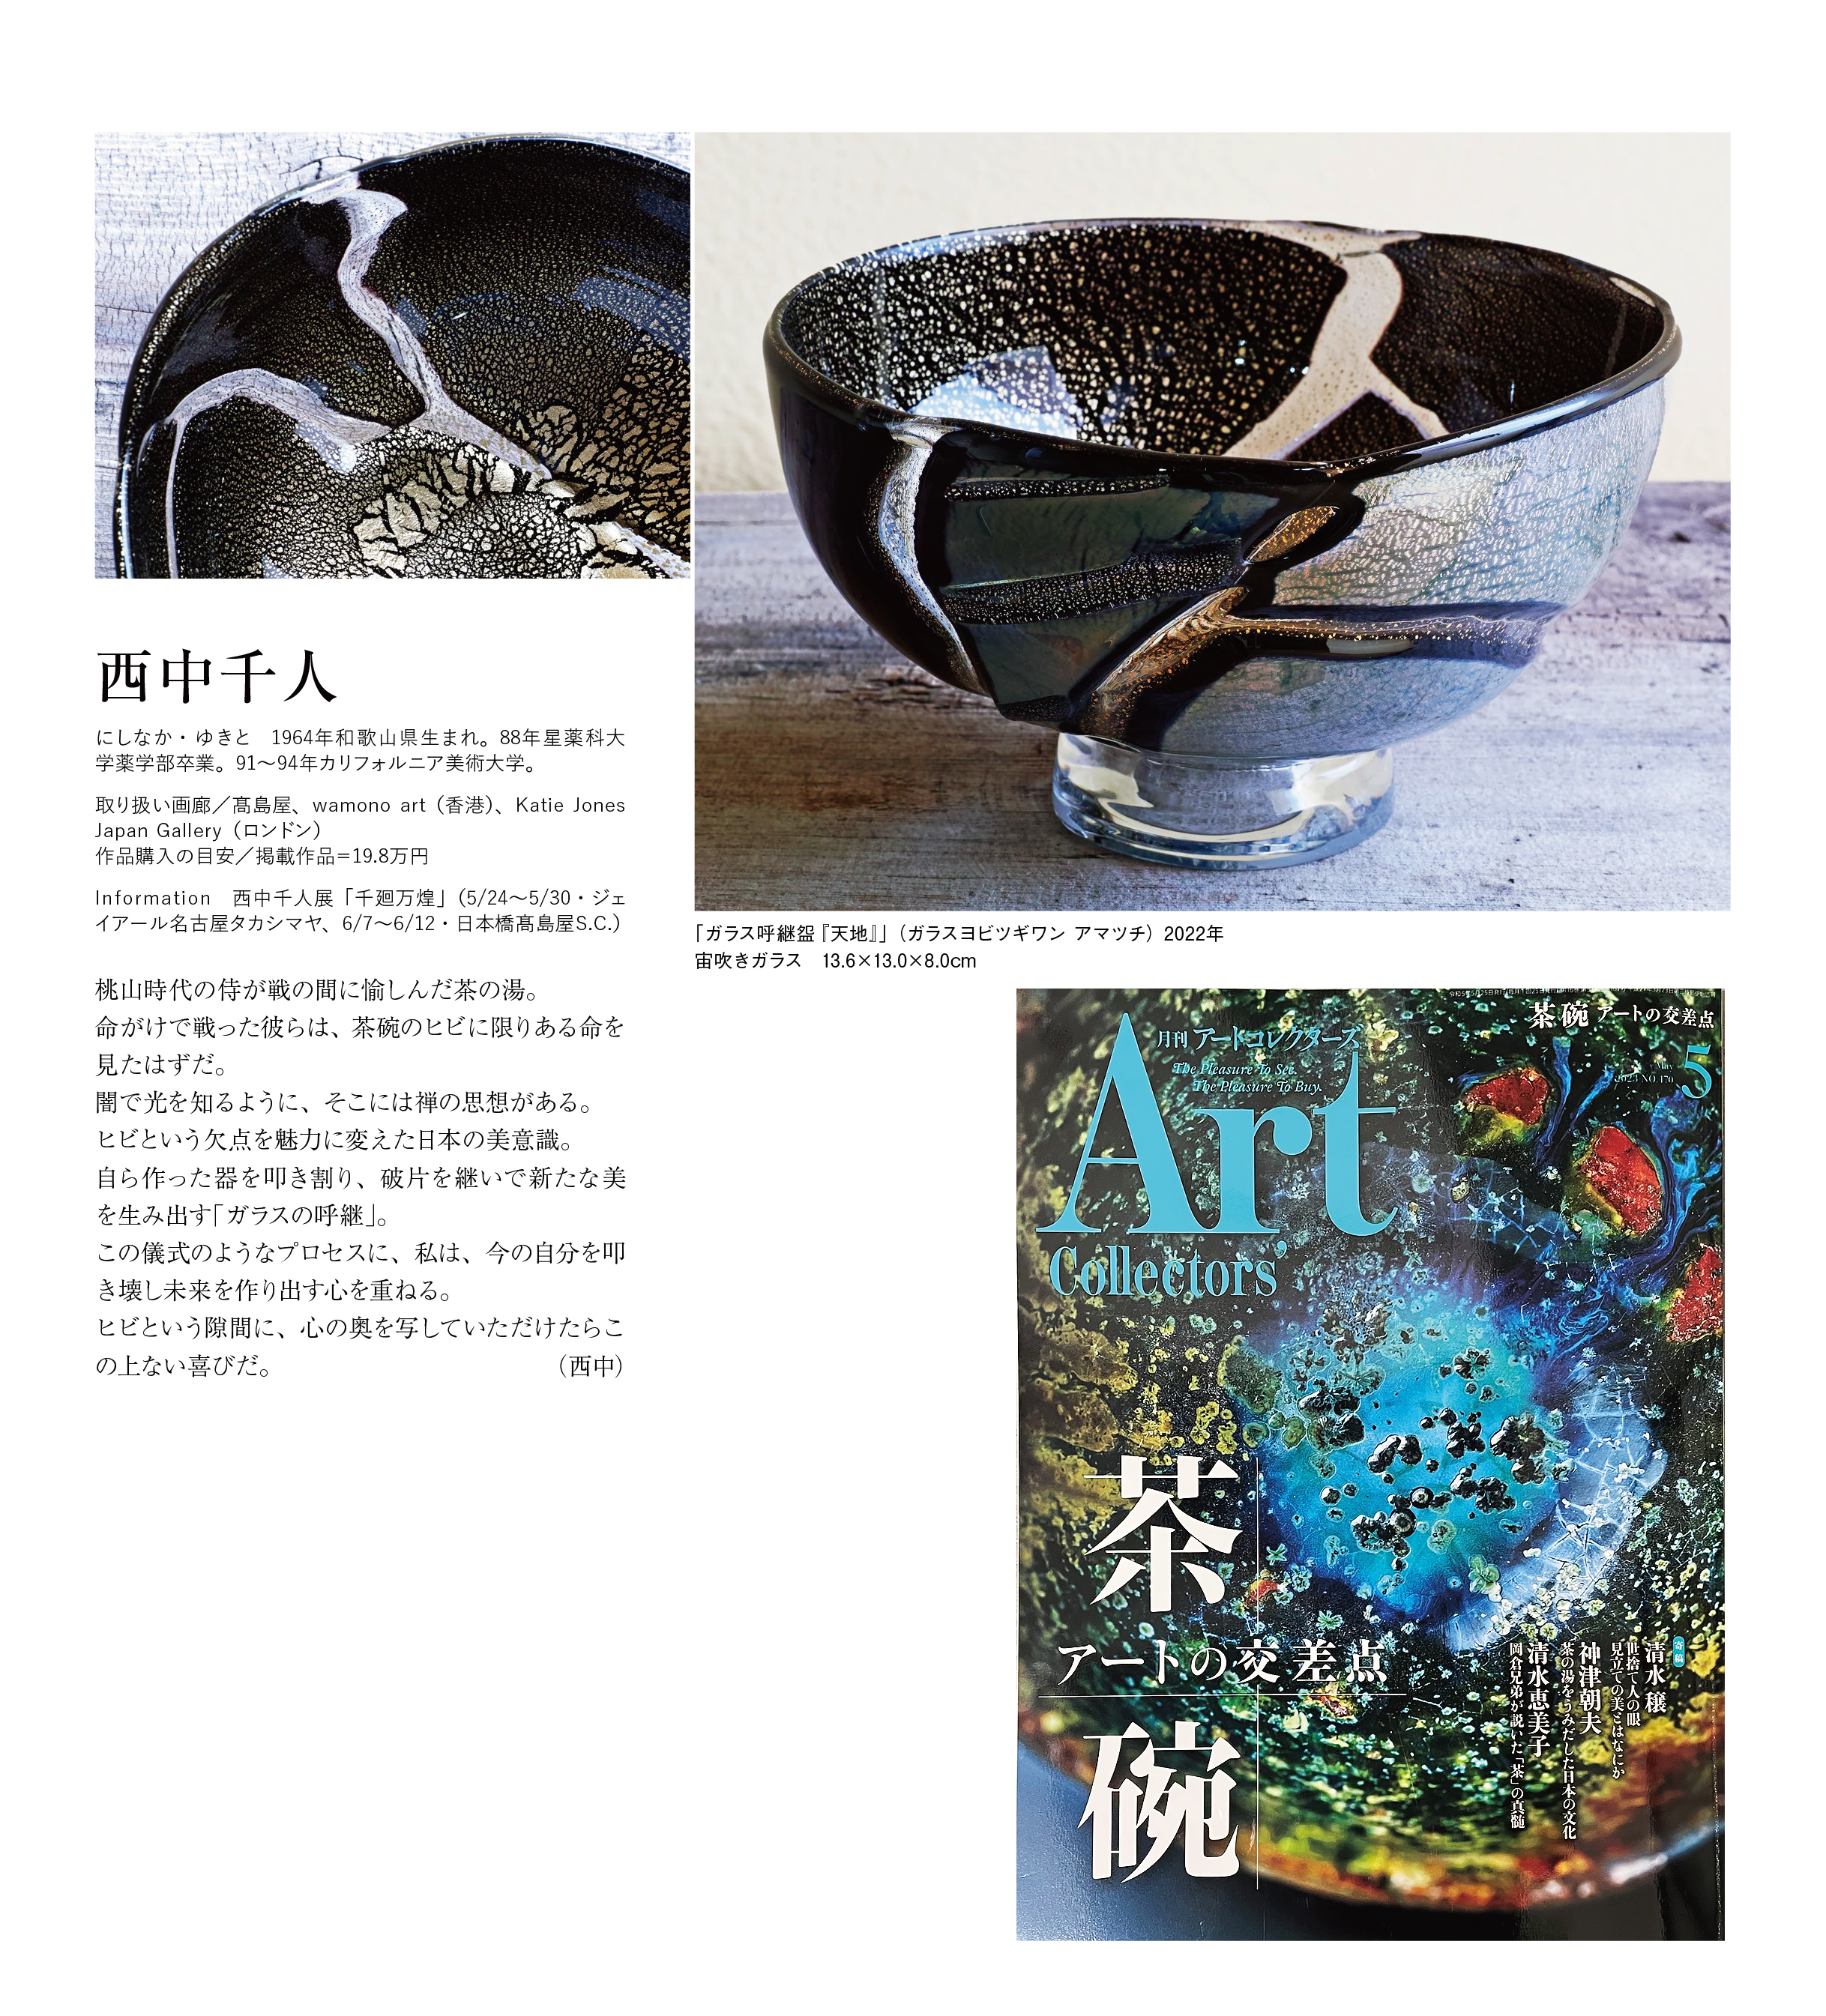 ガラス作家 西中千人のメディア掲載 PUBLICITY of NISHINAKA YUKITO